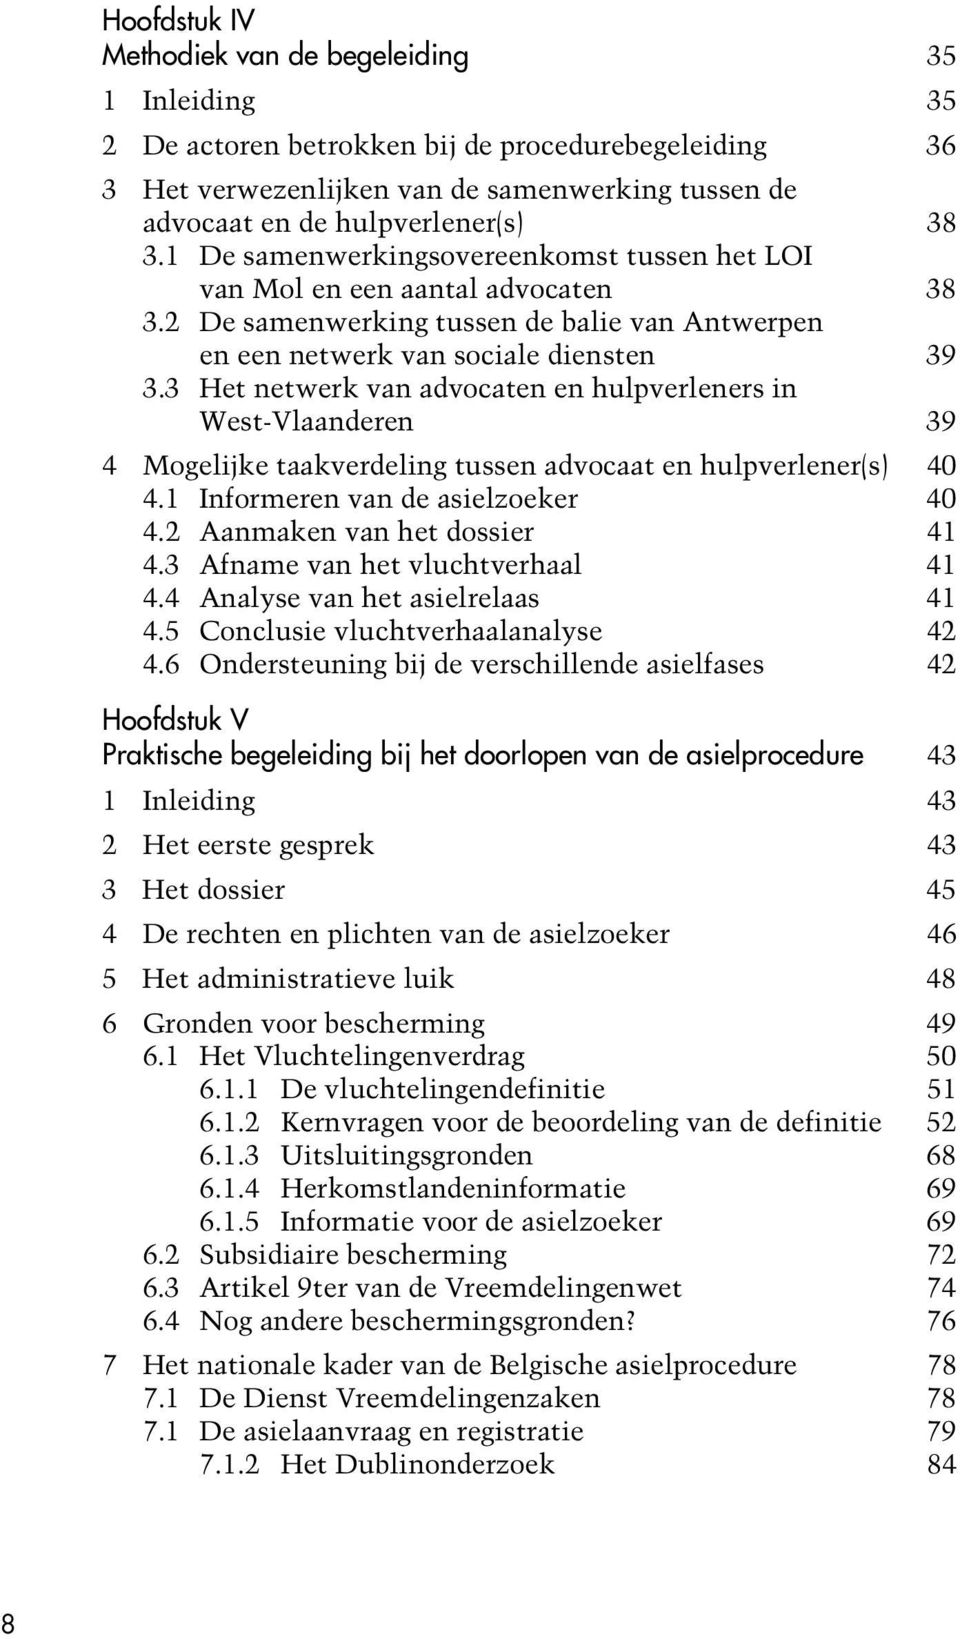 3 Het netwerk van advocaten en hulpverleners in West-Vlaanderen 39 4 Mogelijke taakverdeling tussen advocaat en hulpverlener(s) 40 4.1 Informeren van de asielzoeker 40 4.